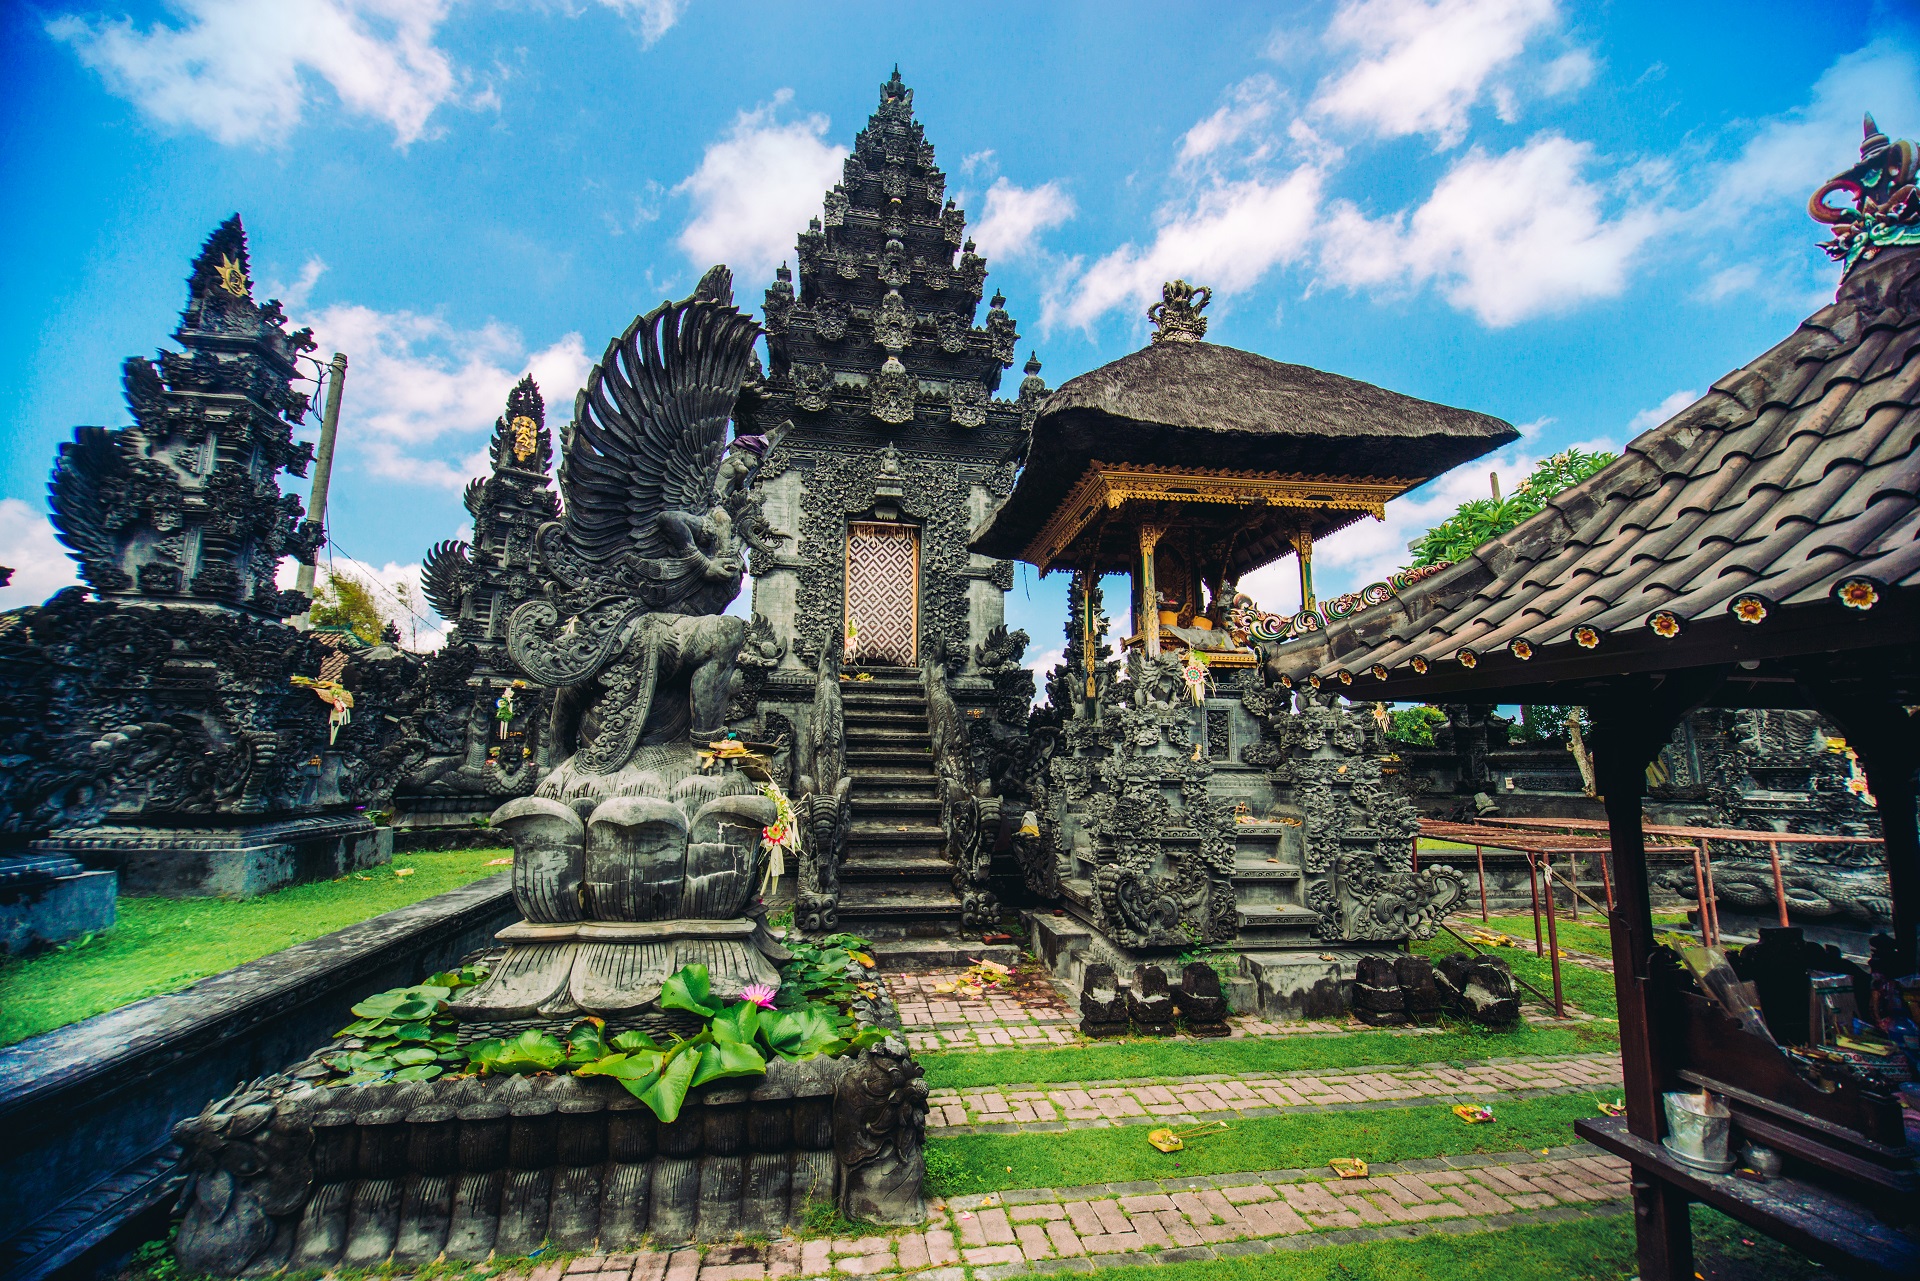 Auf Bali gibt es zahlreiche hübsche Tempel